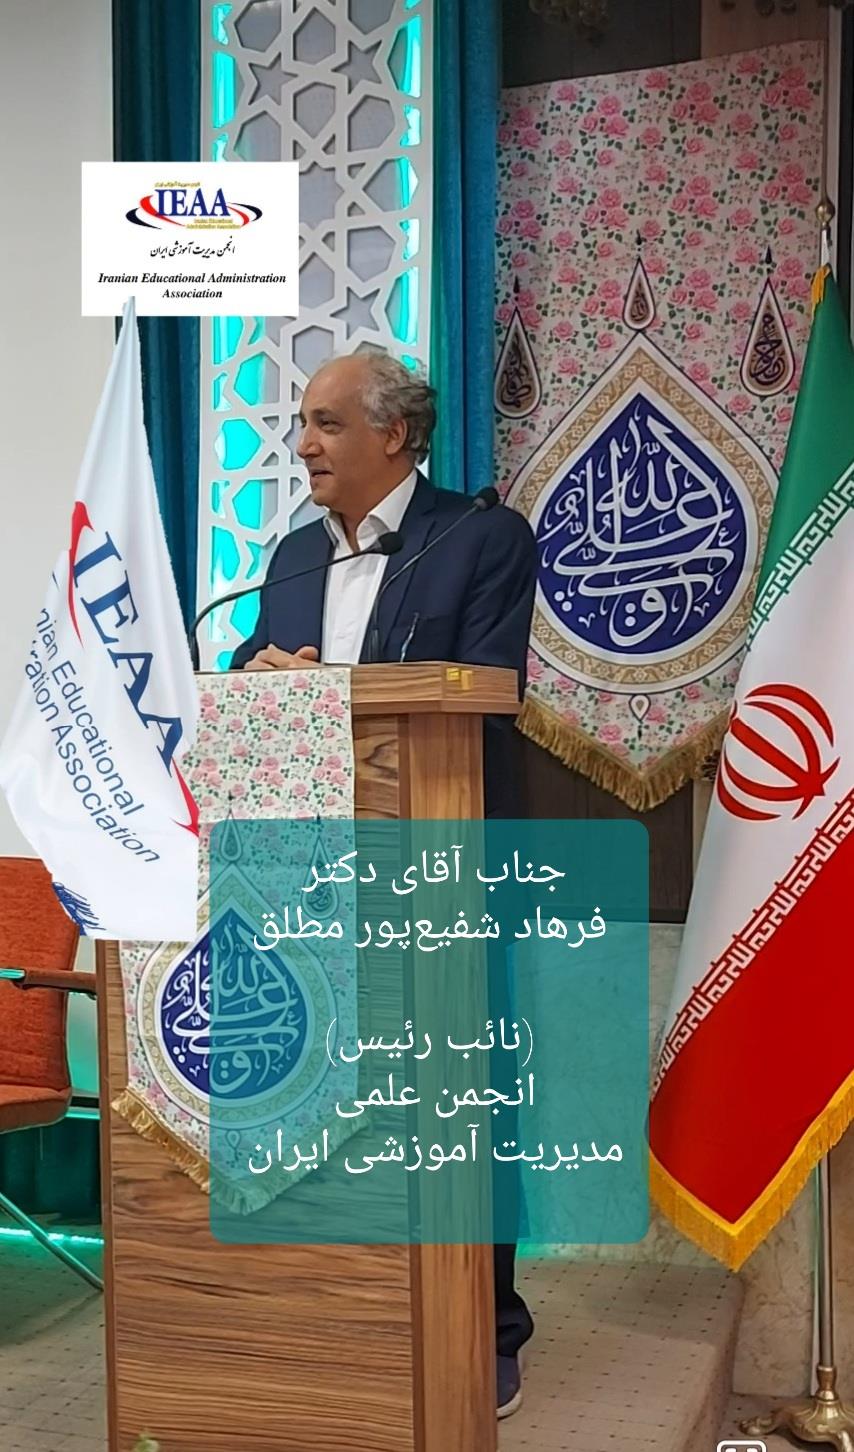 تبریک انجمن‌ علمی مدیریت آموزشی ایران جهت کسب مقام نائب رئیس